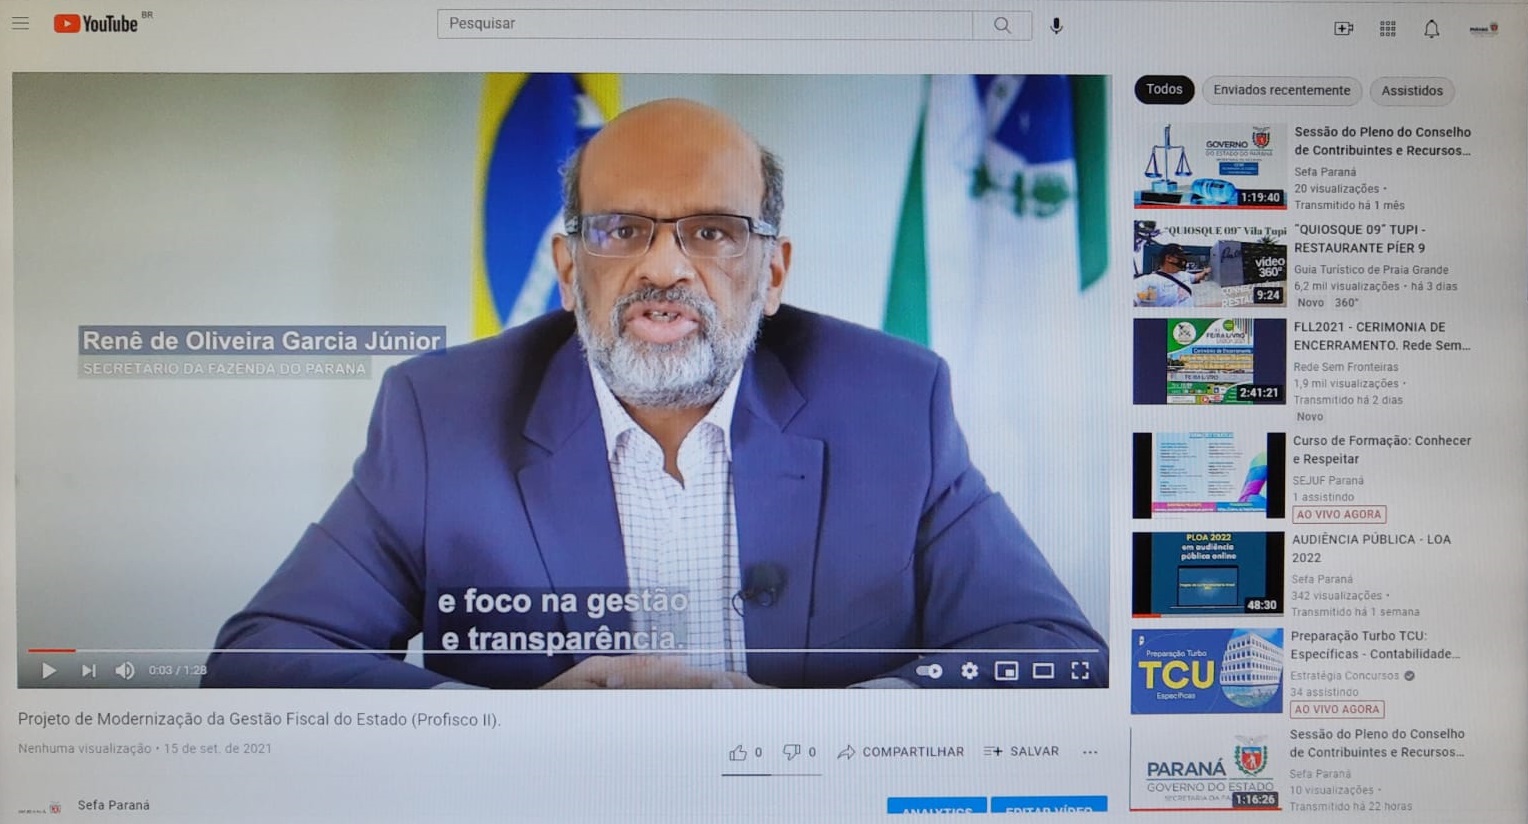 Fazenda divulga vídeos explicativos sobre a modernização da gestão fiscal do Estado